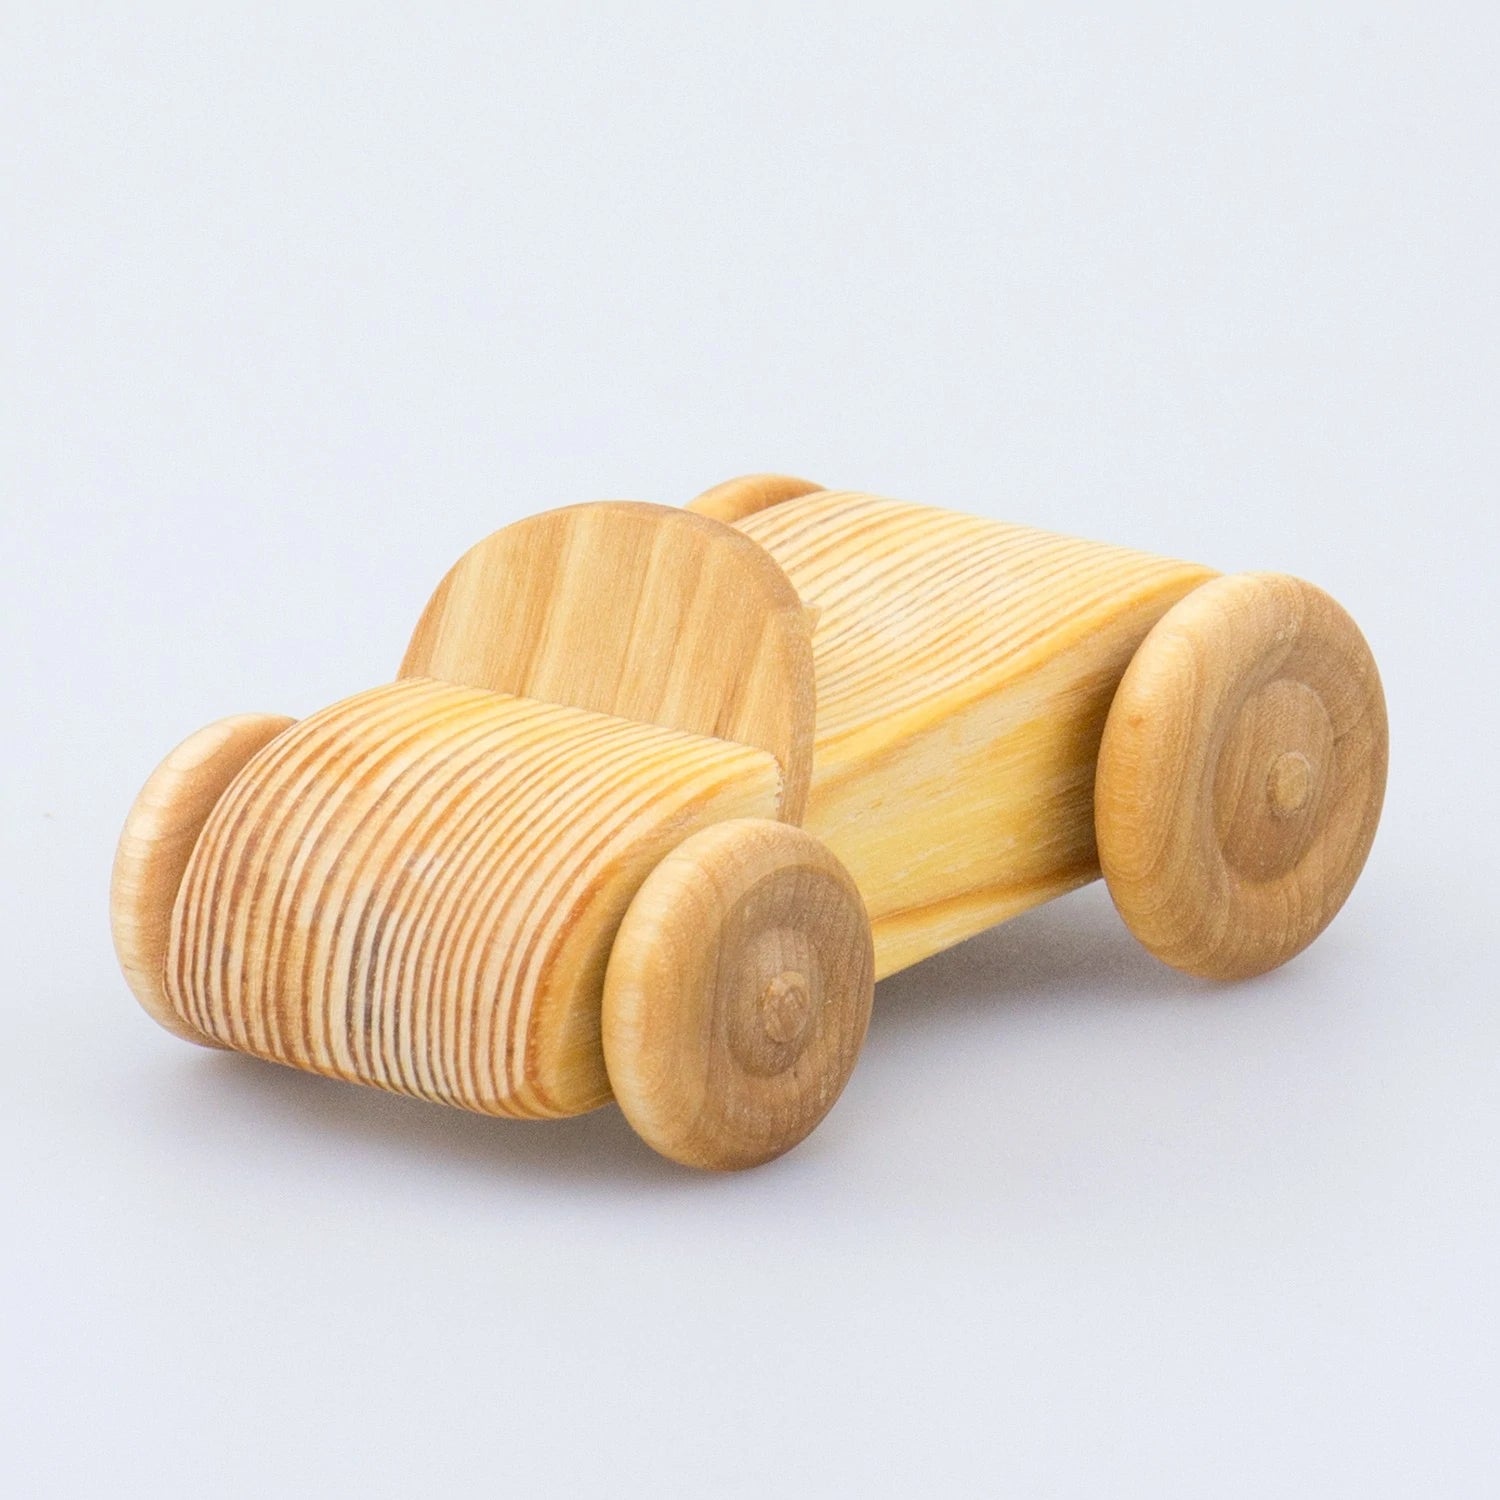 Debresk Small Wooden Sports Car Au